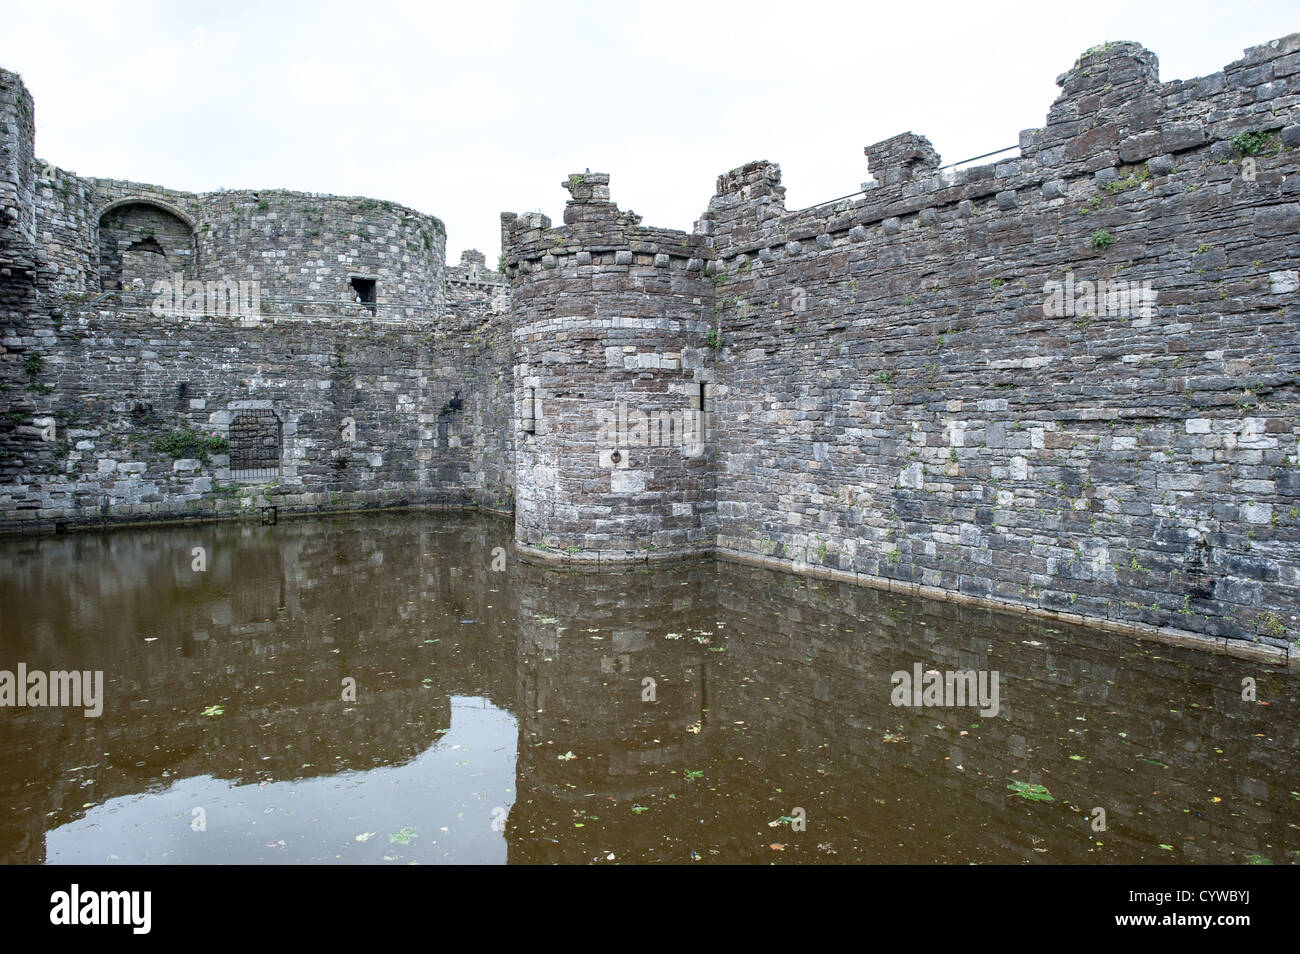 BEAUMARIS, pays de Galles - le douve du château de Beaumaris sur l'île d'Anglesey, sur la côte nord du pays de Galles, Royaume-Uni. La pittoresque ville côtière de Beaumaris, située sur l'île d'Anglesey au pays de Galles, offre aux visiteurs un aperçu de la riche histoire de la région, avec son château médiéval, son architecture victorienne et son bord de mer pittoresque. Beaumaris a été classé au patrimoine mondial de l'UNESCO et continue à charmer les voyageurs avec ses monuments bien conservés et sa beauté naturelle étonnante. Banque D'Images